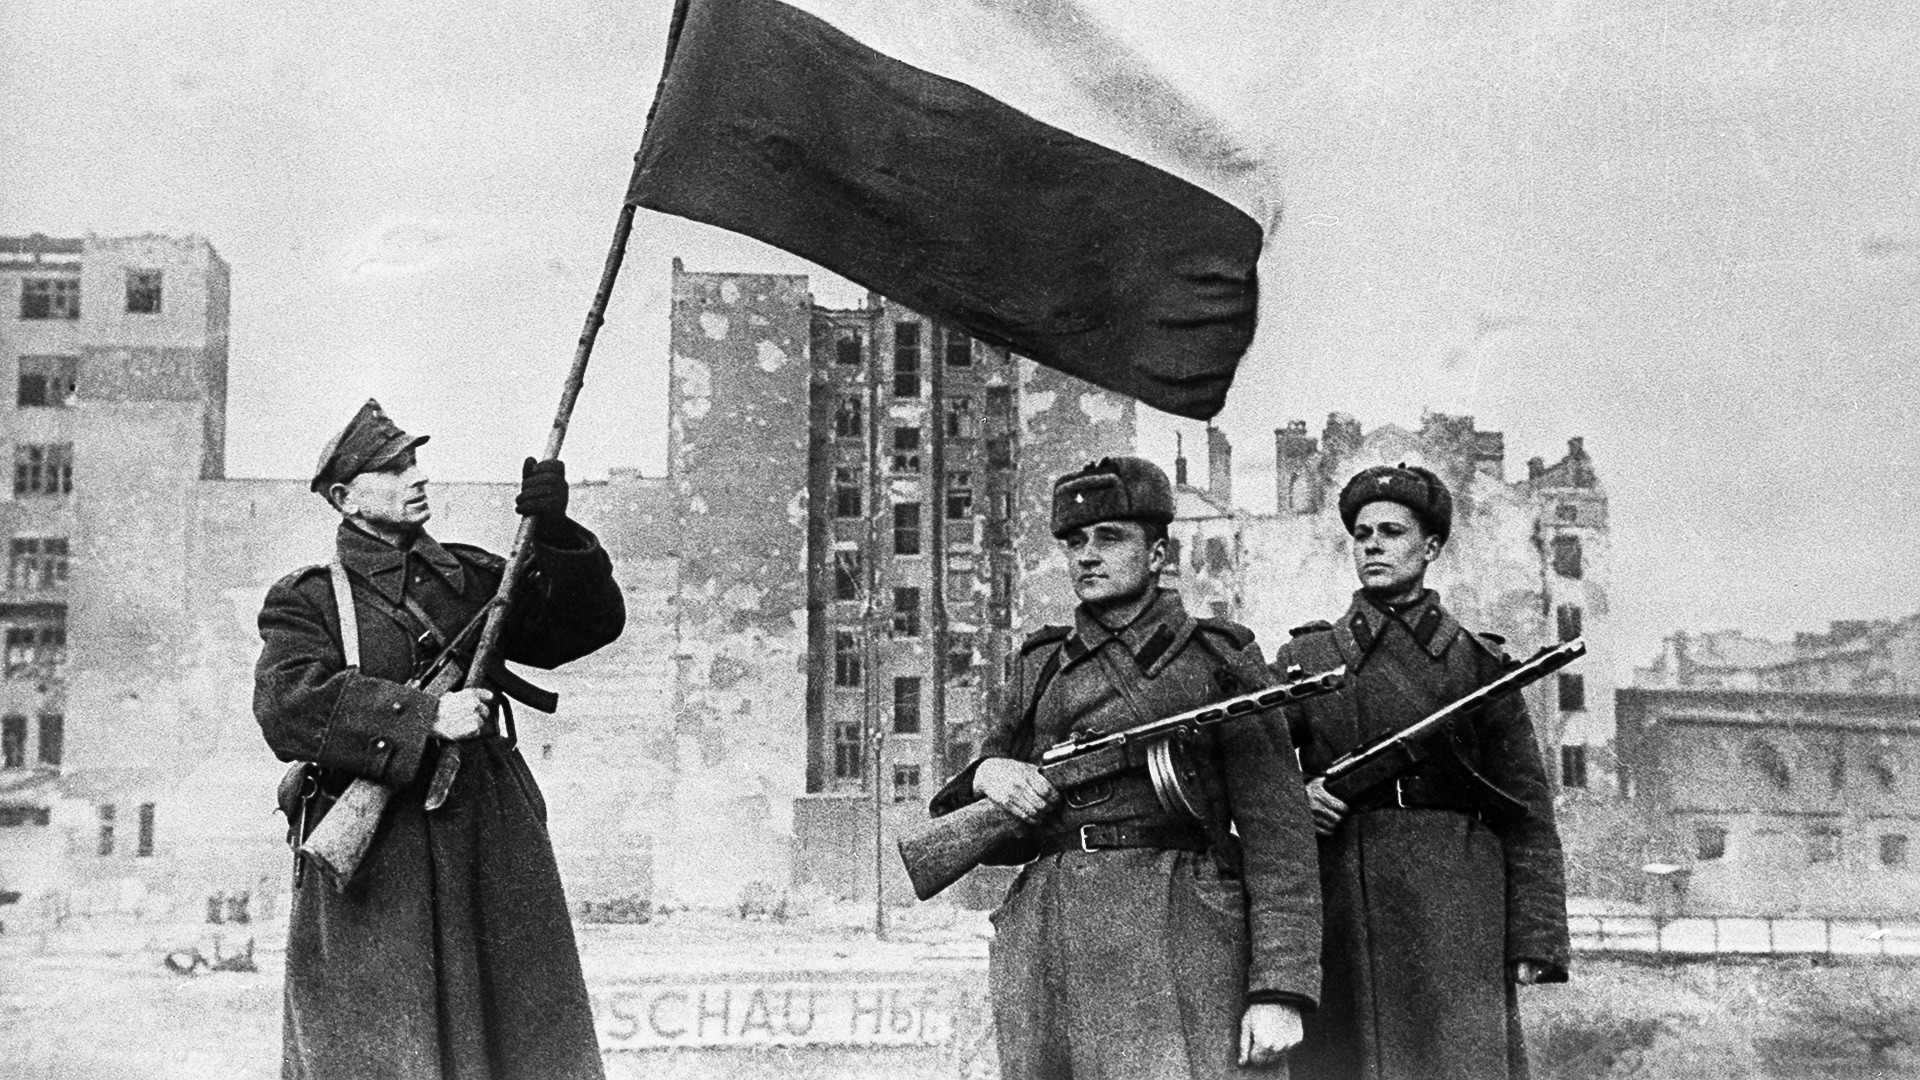 Велики отаџбински рат 1941-1945. Ослобођење Пољске од немачког окупатора. Варшавско-познањска офанзивна операција јединица Црвене армије и Пољске војске 14-17. јануара 1945. Изнад Варшаве се завијорила пољска национална застава.